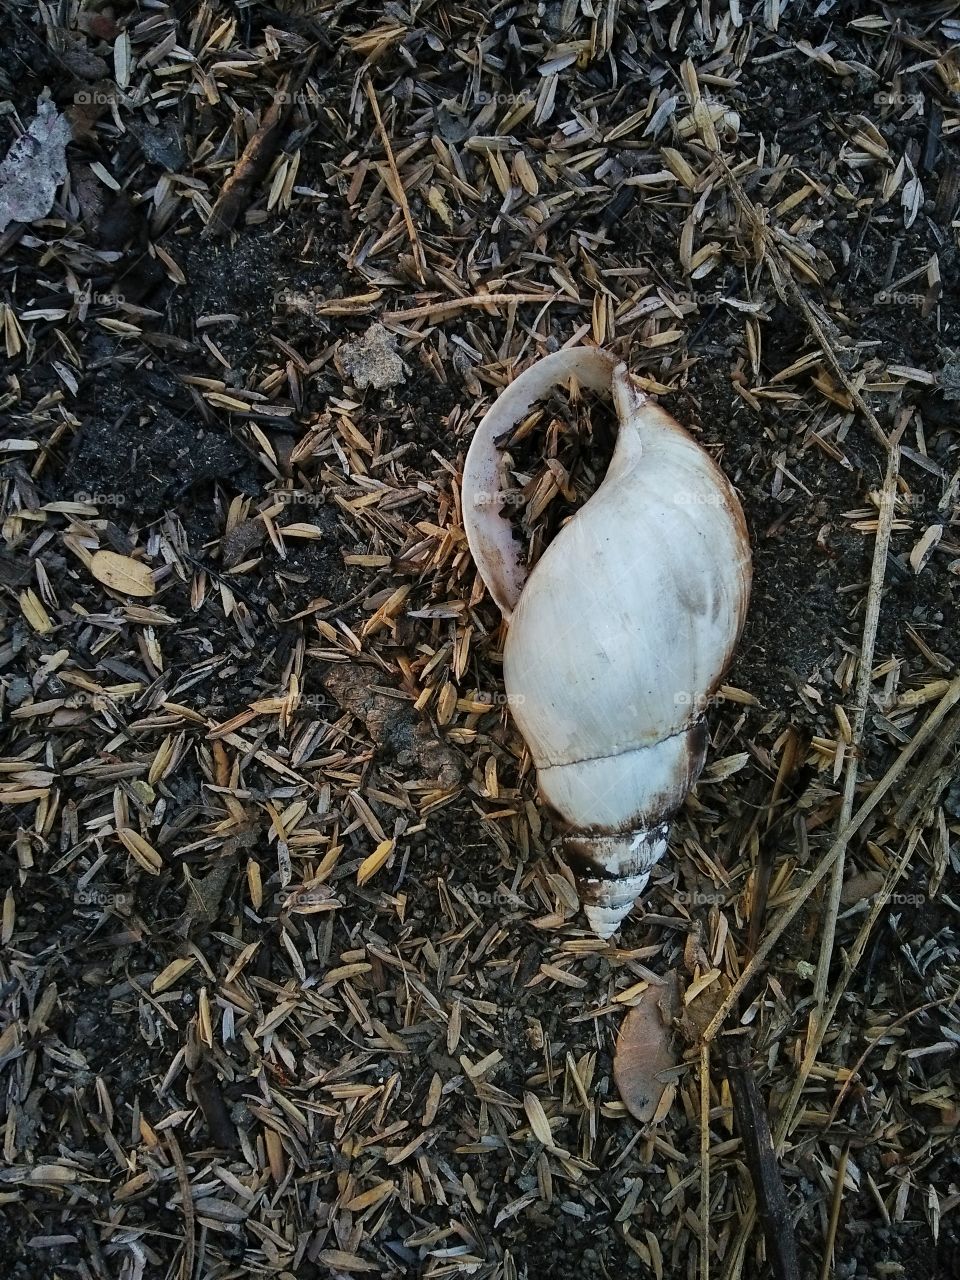 dead snail shells.